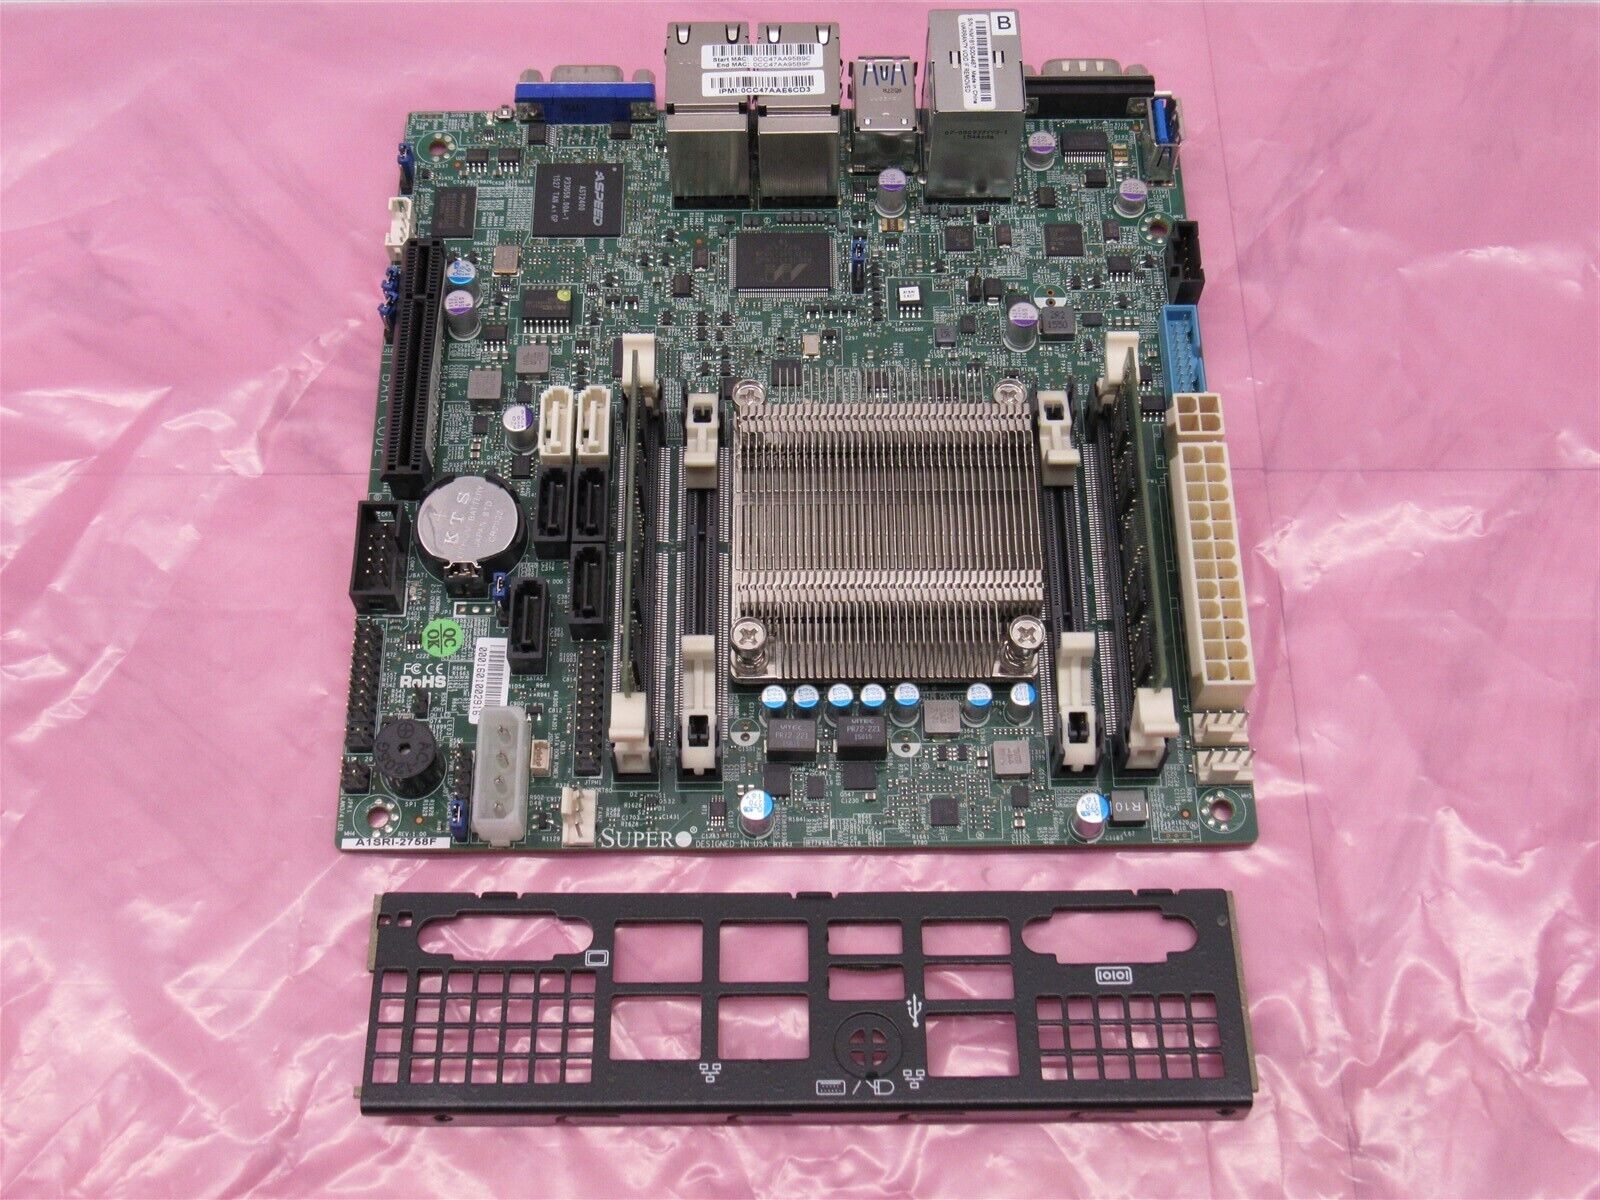 Supermicro A1SRI-2758F Motherboard Mini-ITX Intel Atom C2758 w/ 8GB ECC RAM